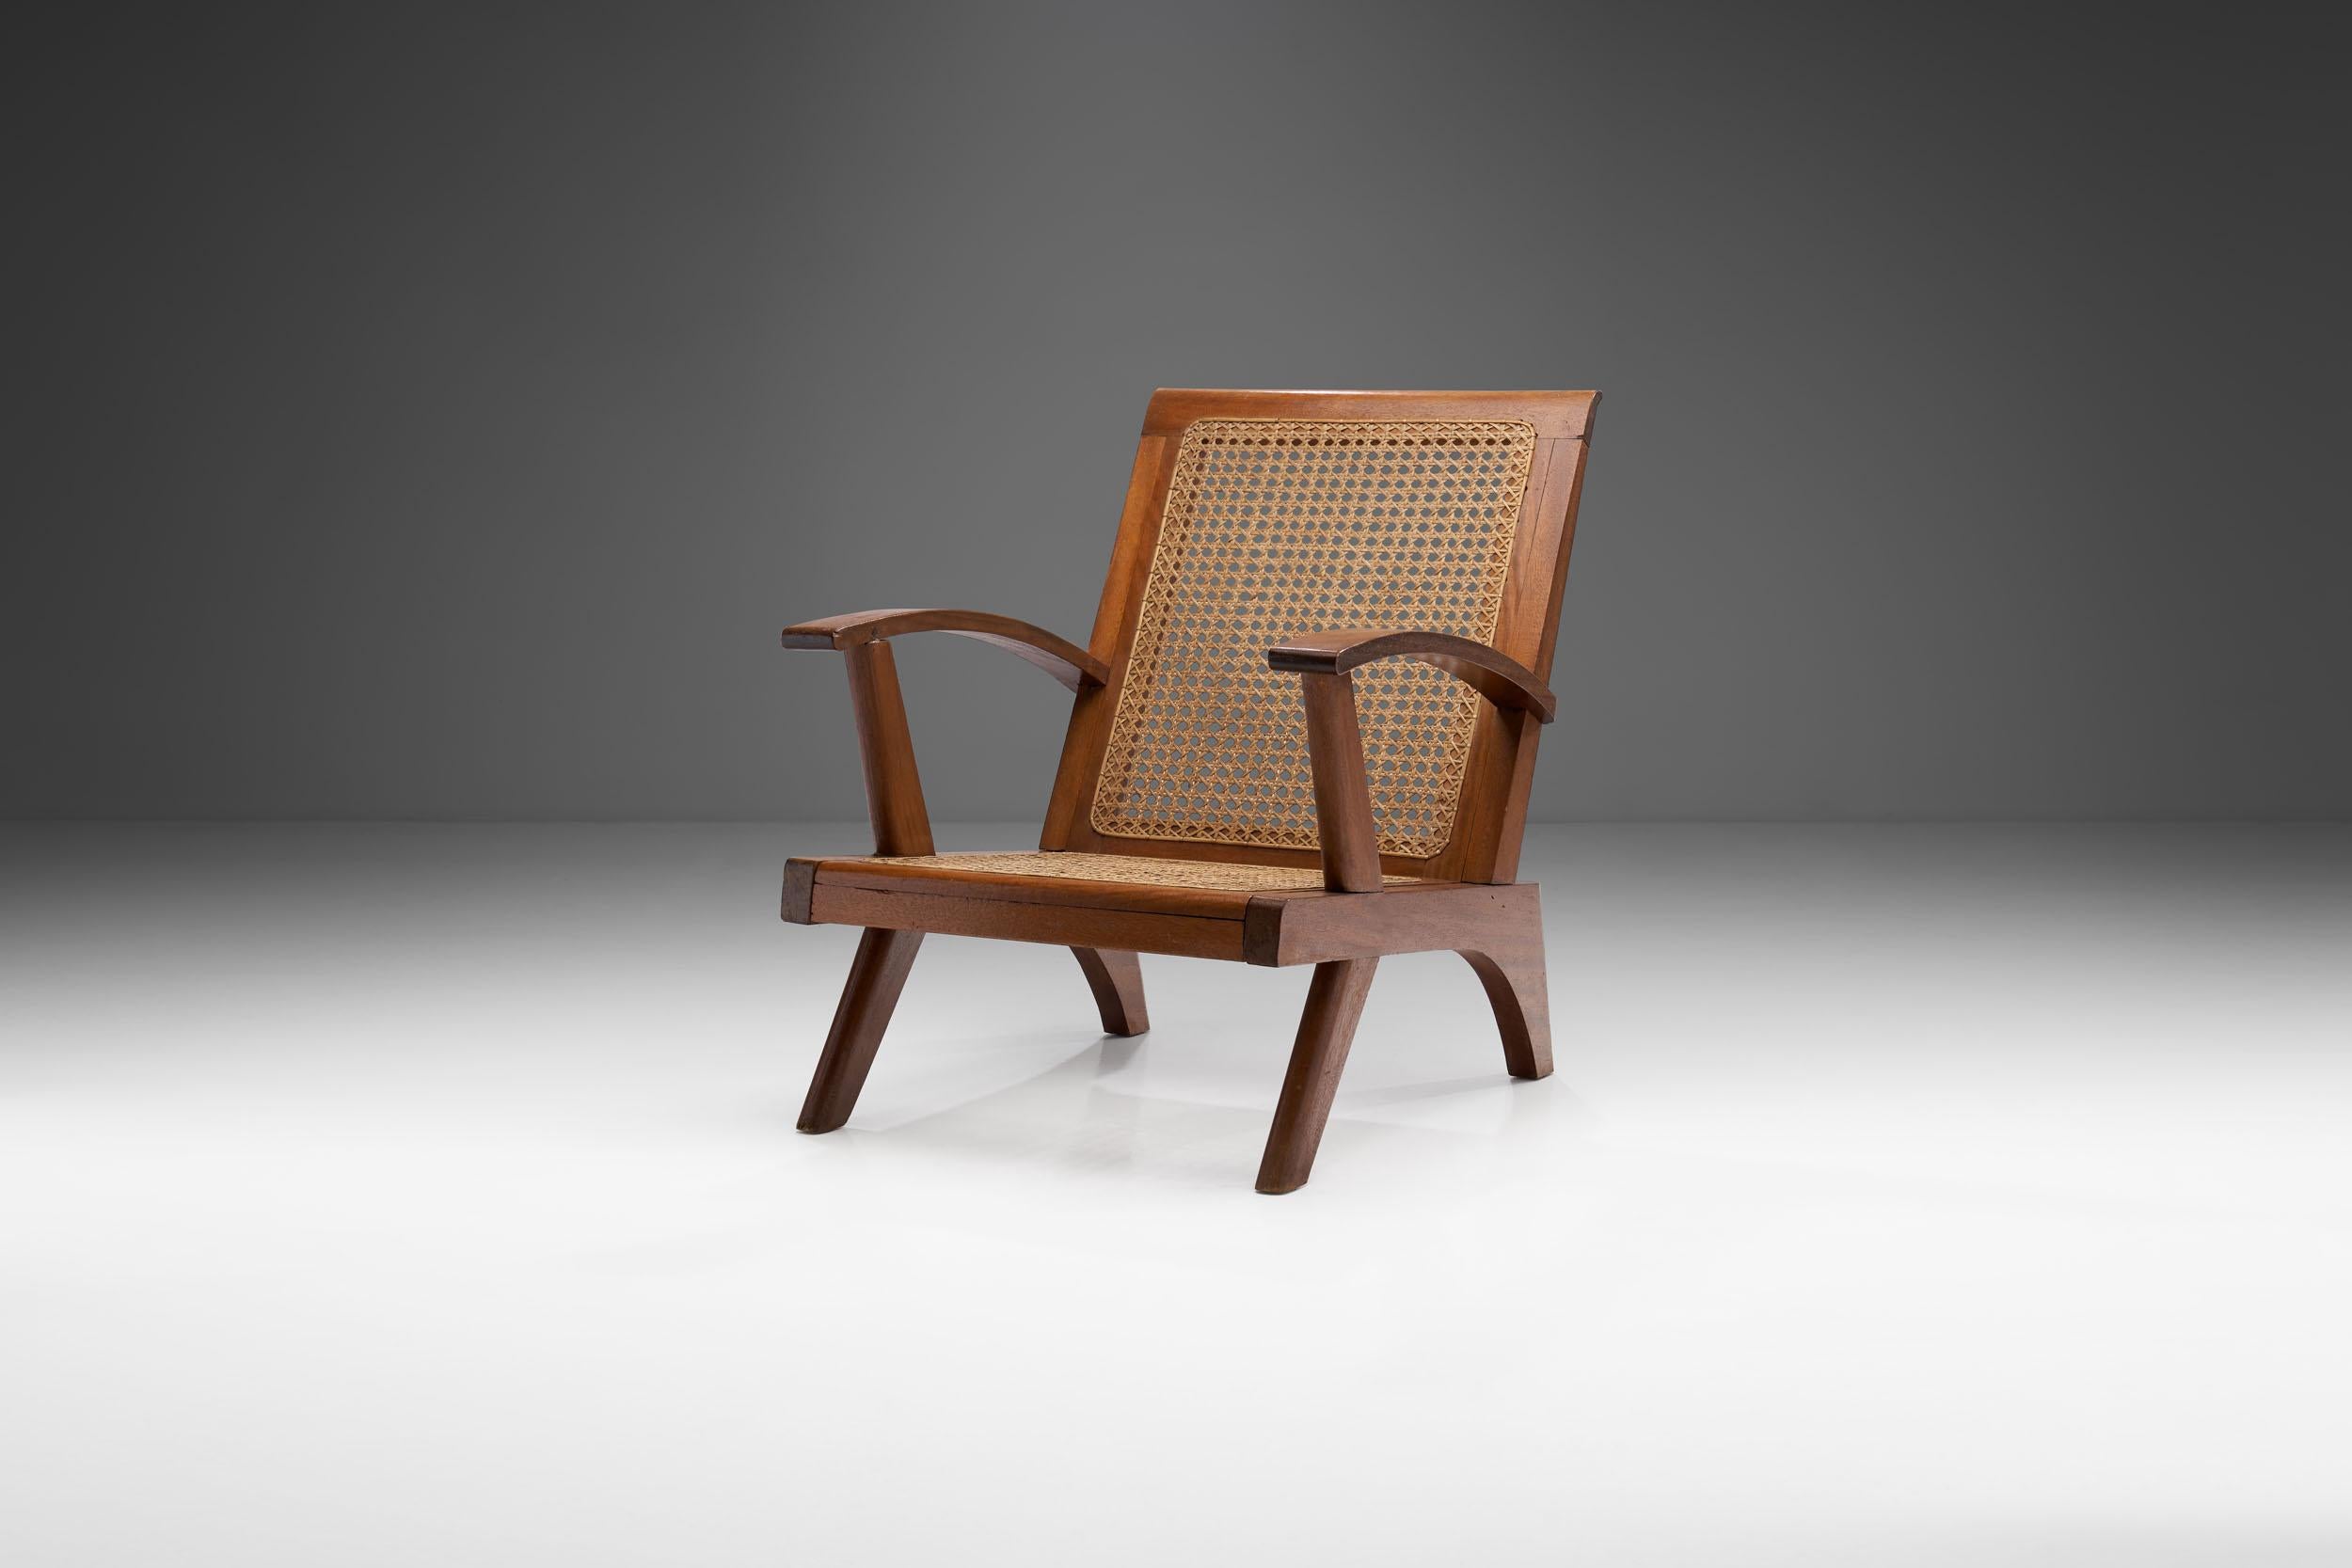 Ce fauteuil français du milieu du siècle combine un corps structurel visuellement étonnant avec une technique de cannage experte et des matériaux de haute qualité. 

Comme au Royaume-Uni et dans une grande partie de l'Europe, la France a connu une